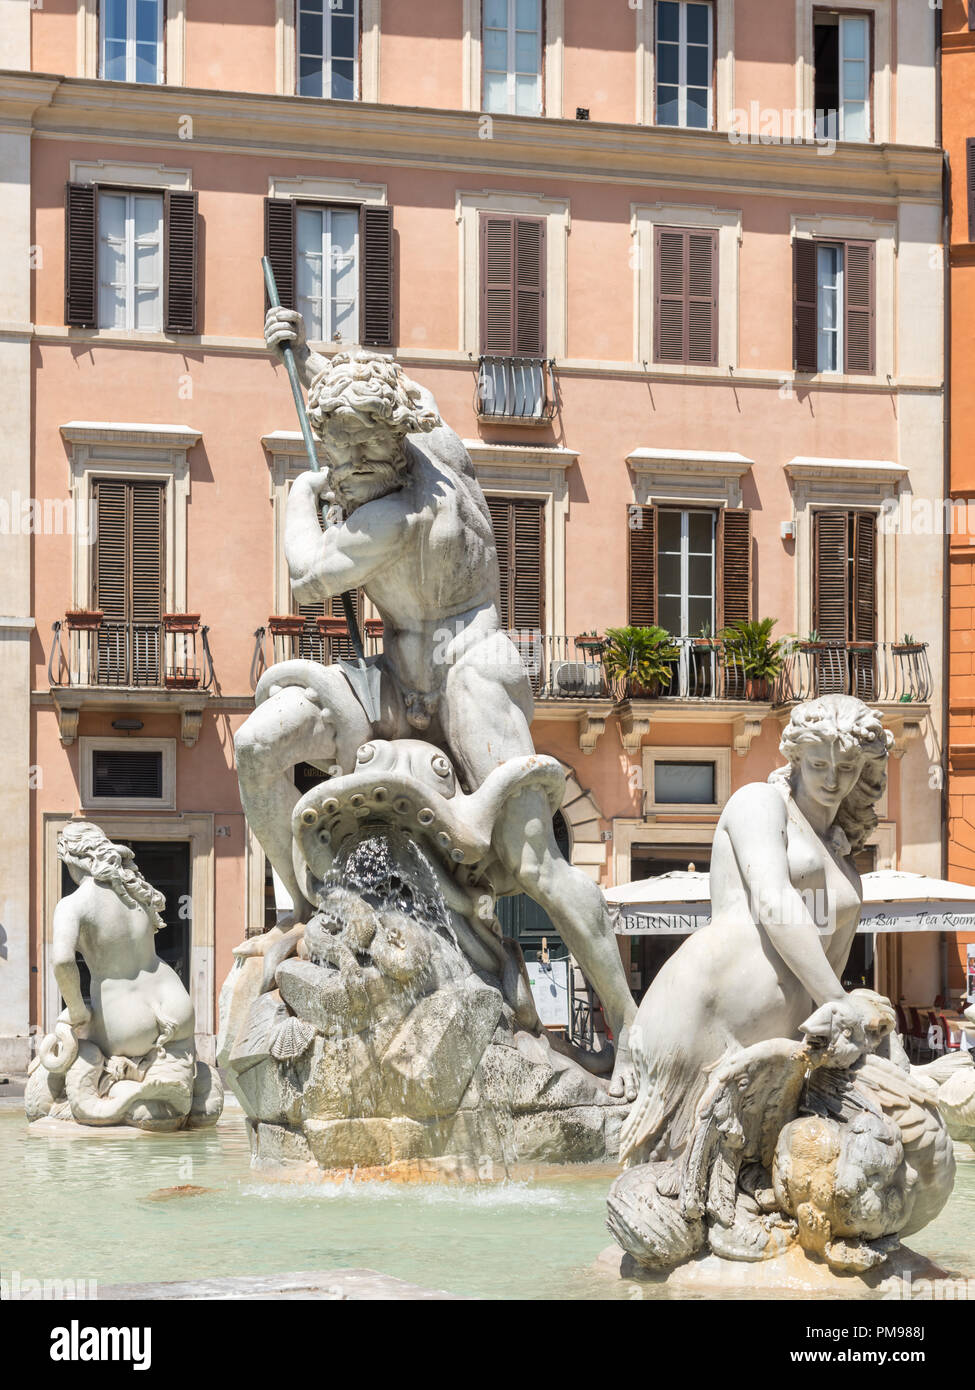 Fontana del Nettuno, Piazza Navona, Rome, Italy Stock Photo